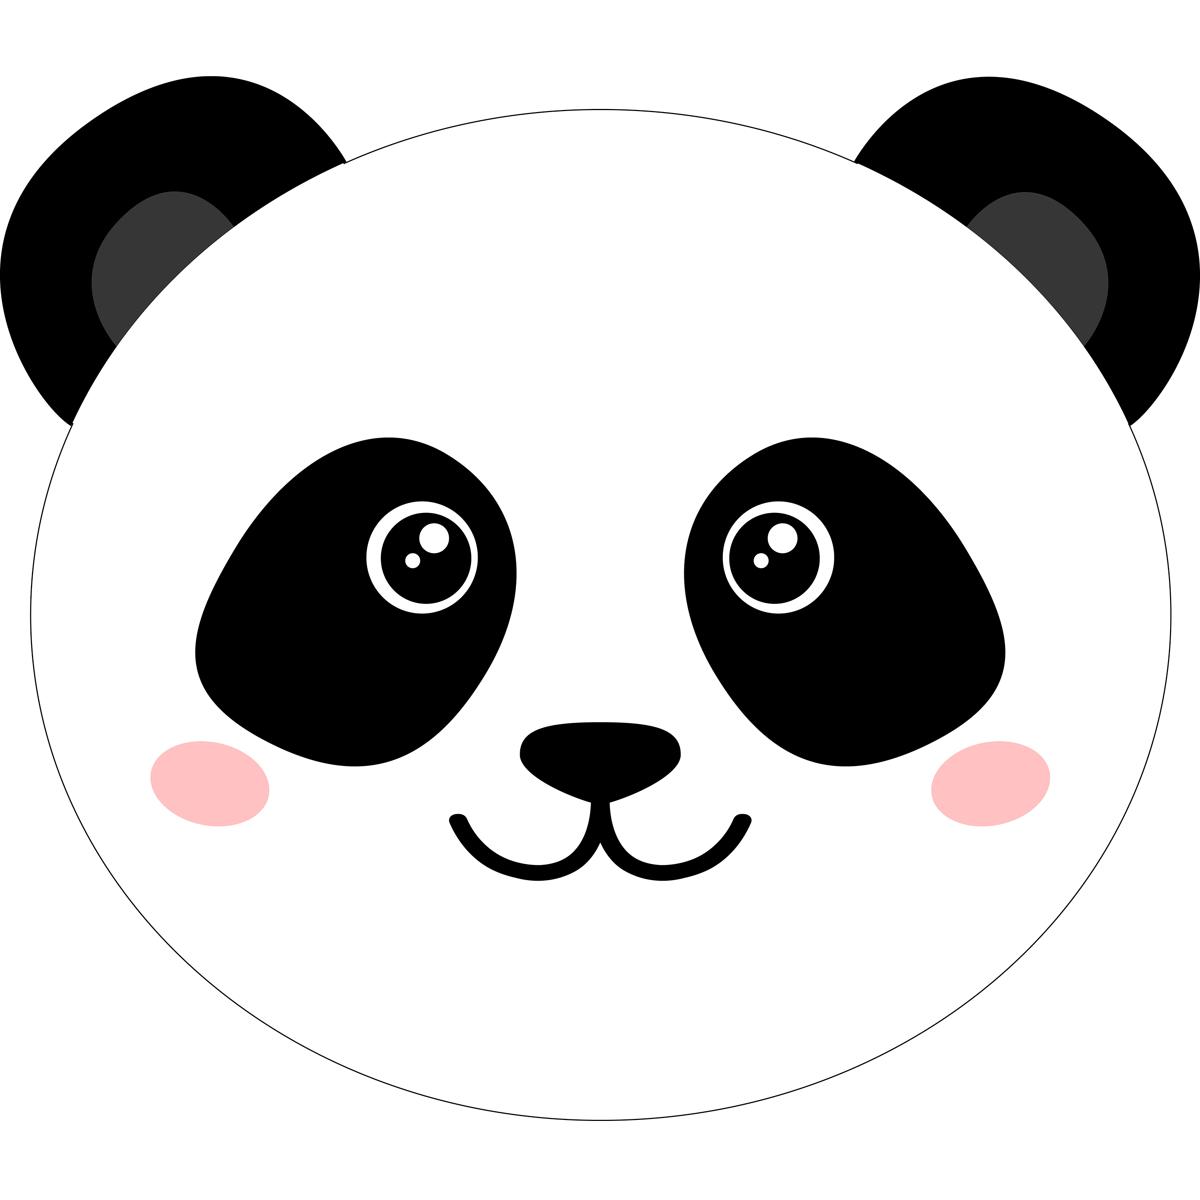 Tischkultur Platzset schwarz/weiß Stiefelmayer-Contento Panda